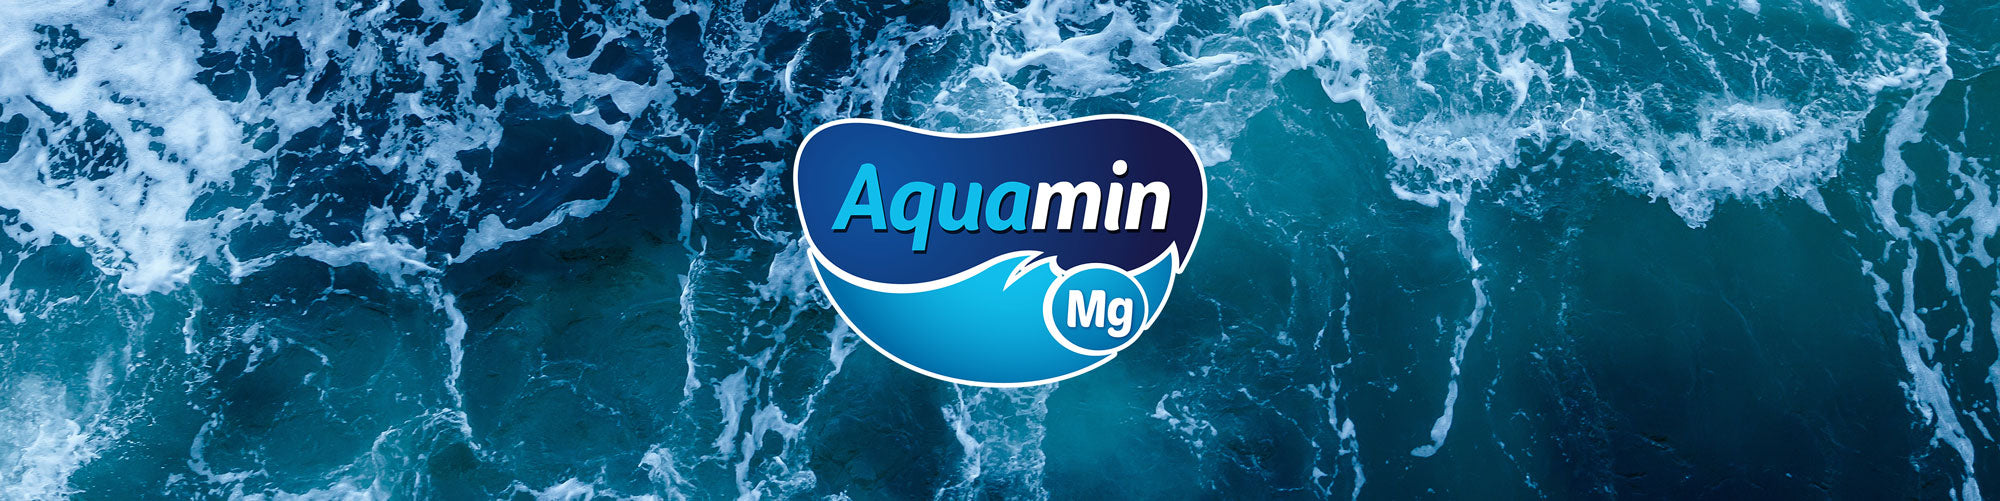 Aquamin-Magnesium_lang.jpg__PID:6c1d2f3f-b4df-420c-a601-f28f8541514e